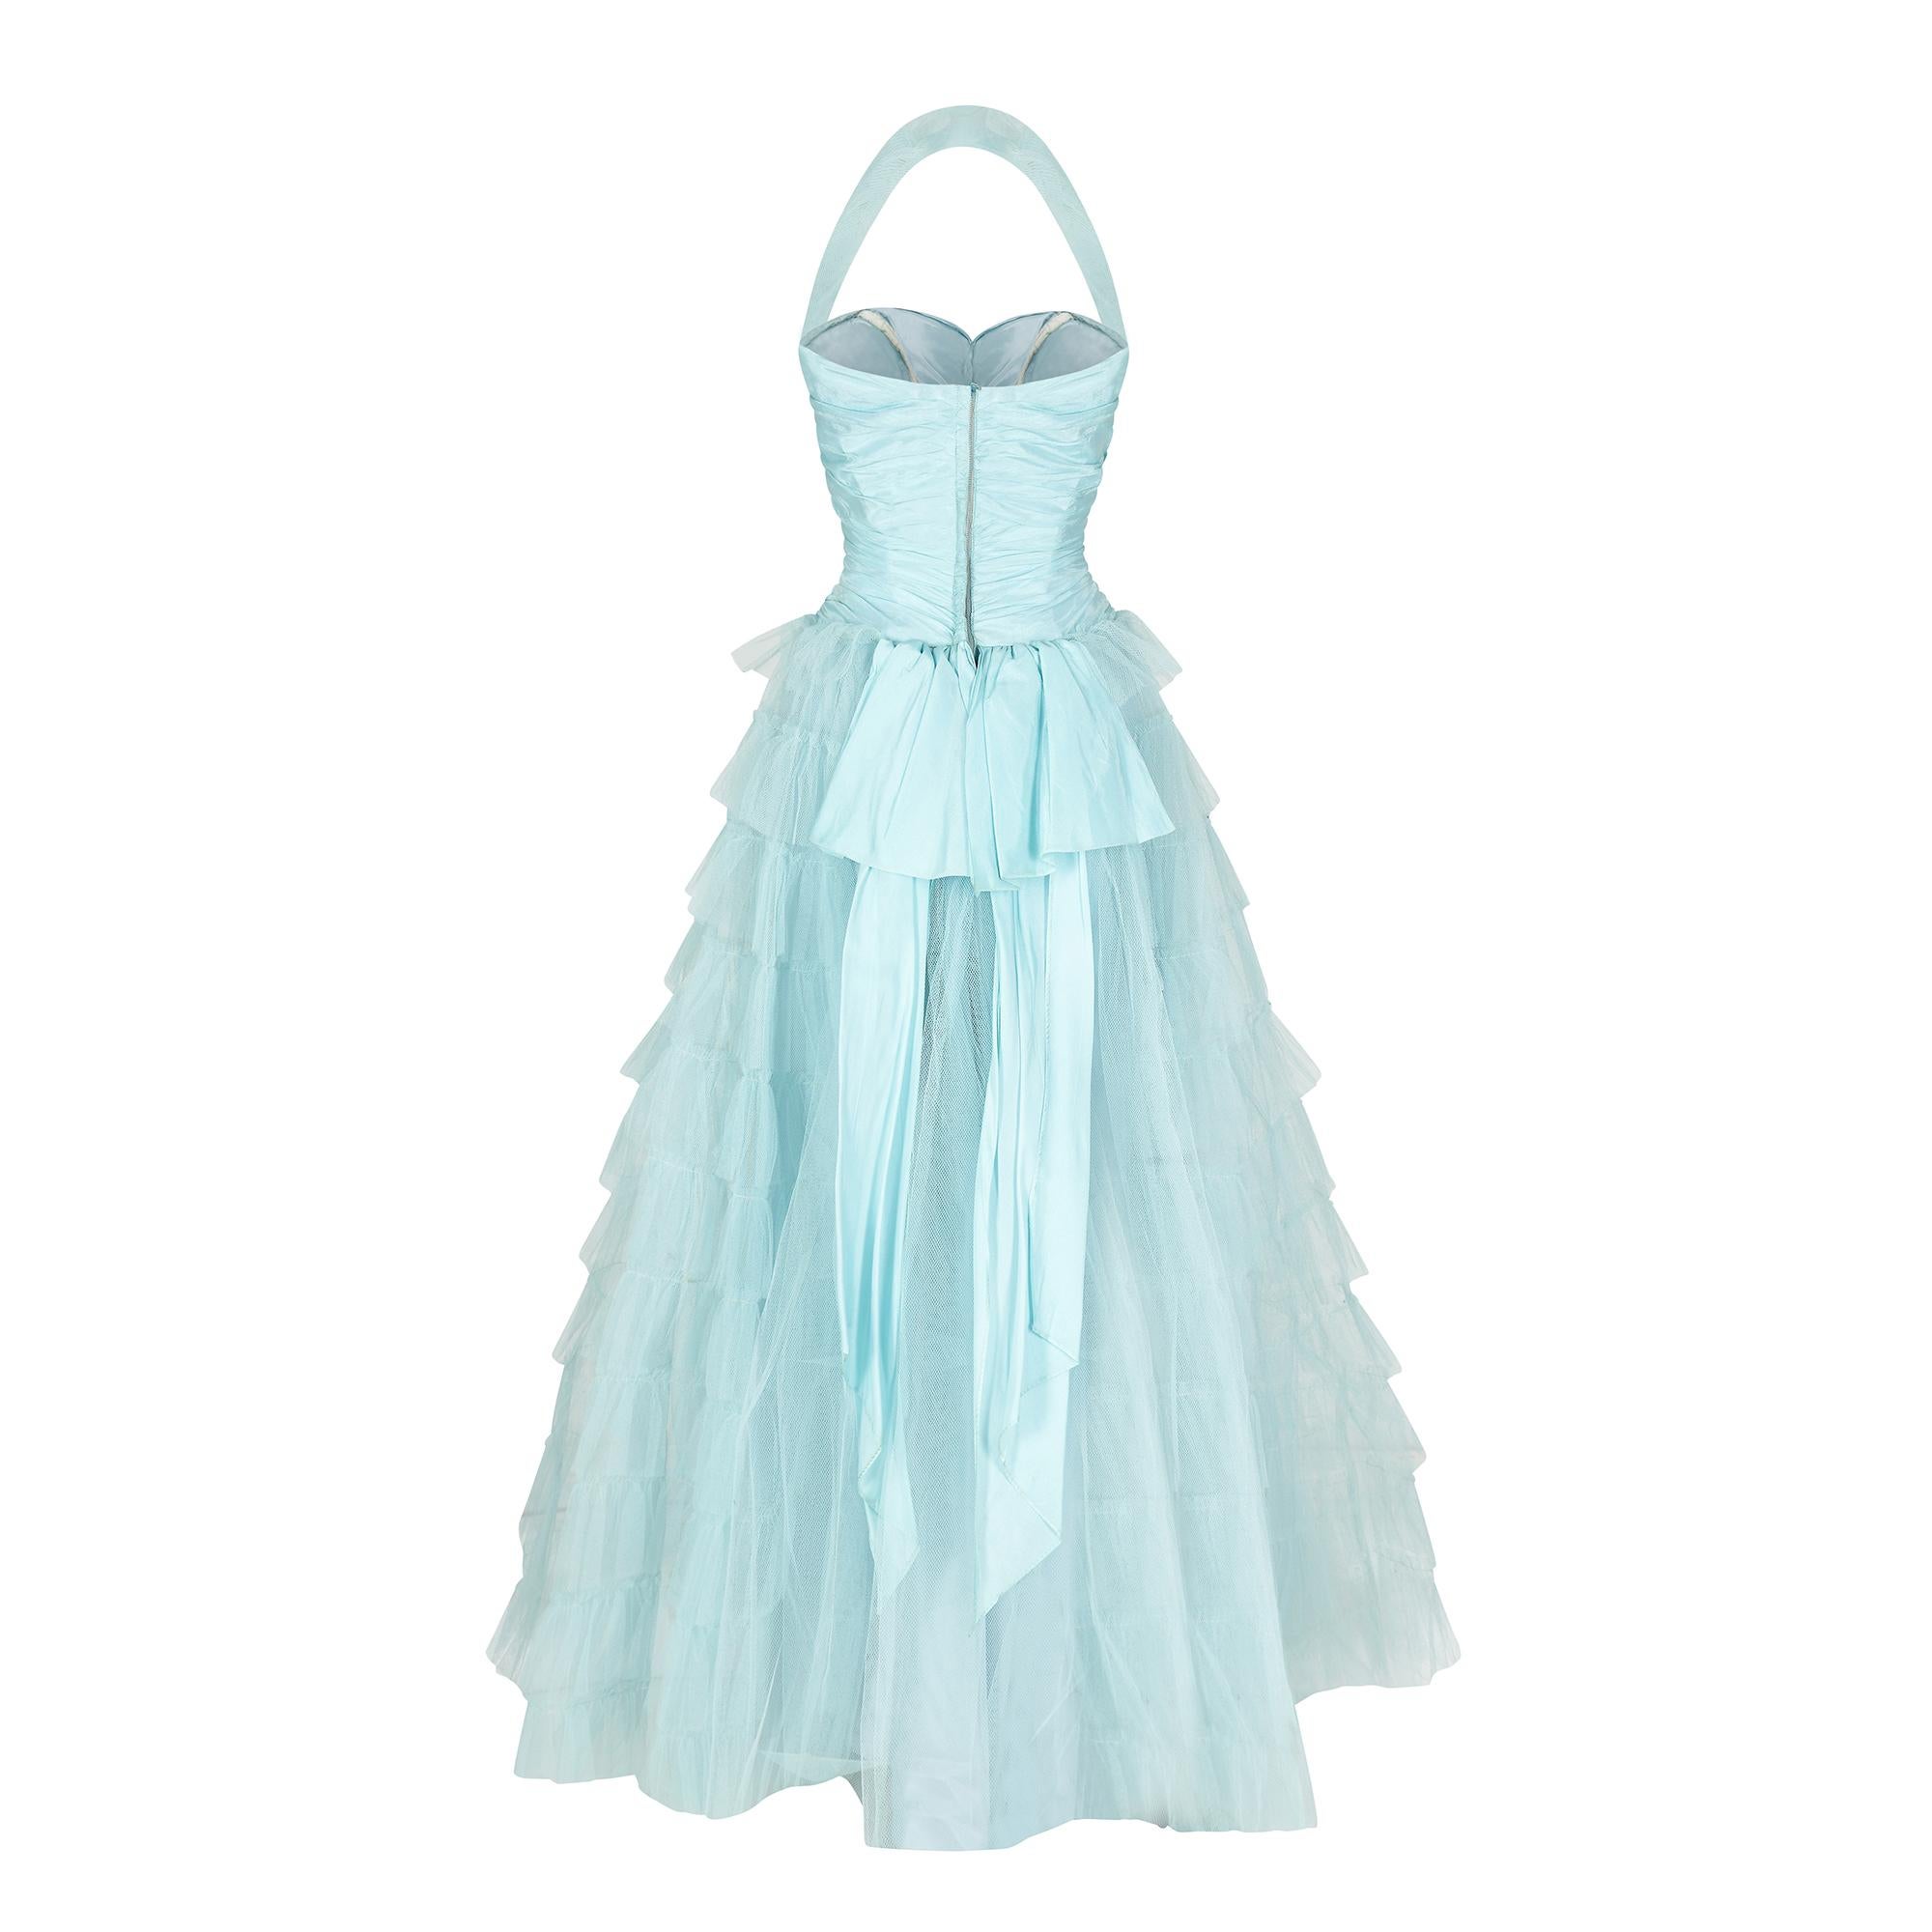 Cette robe de bal originale des années 1950, en turquoise et en filet, est une véritable pièce de conte de fées. Elle nous rappelle la robe de princesse de Disney portée par Cendrillon lors du bal. 

La jupe se compose de trois couches : une